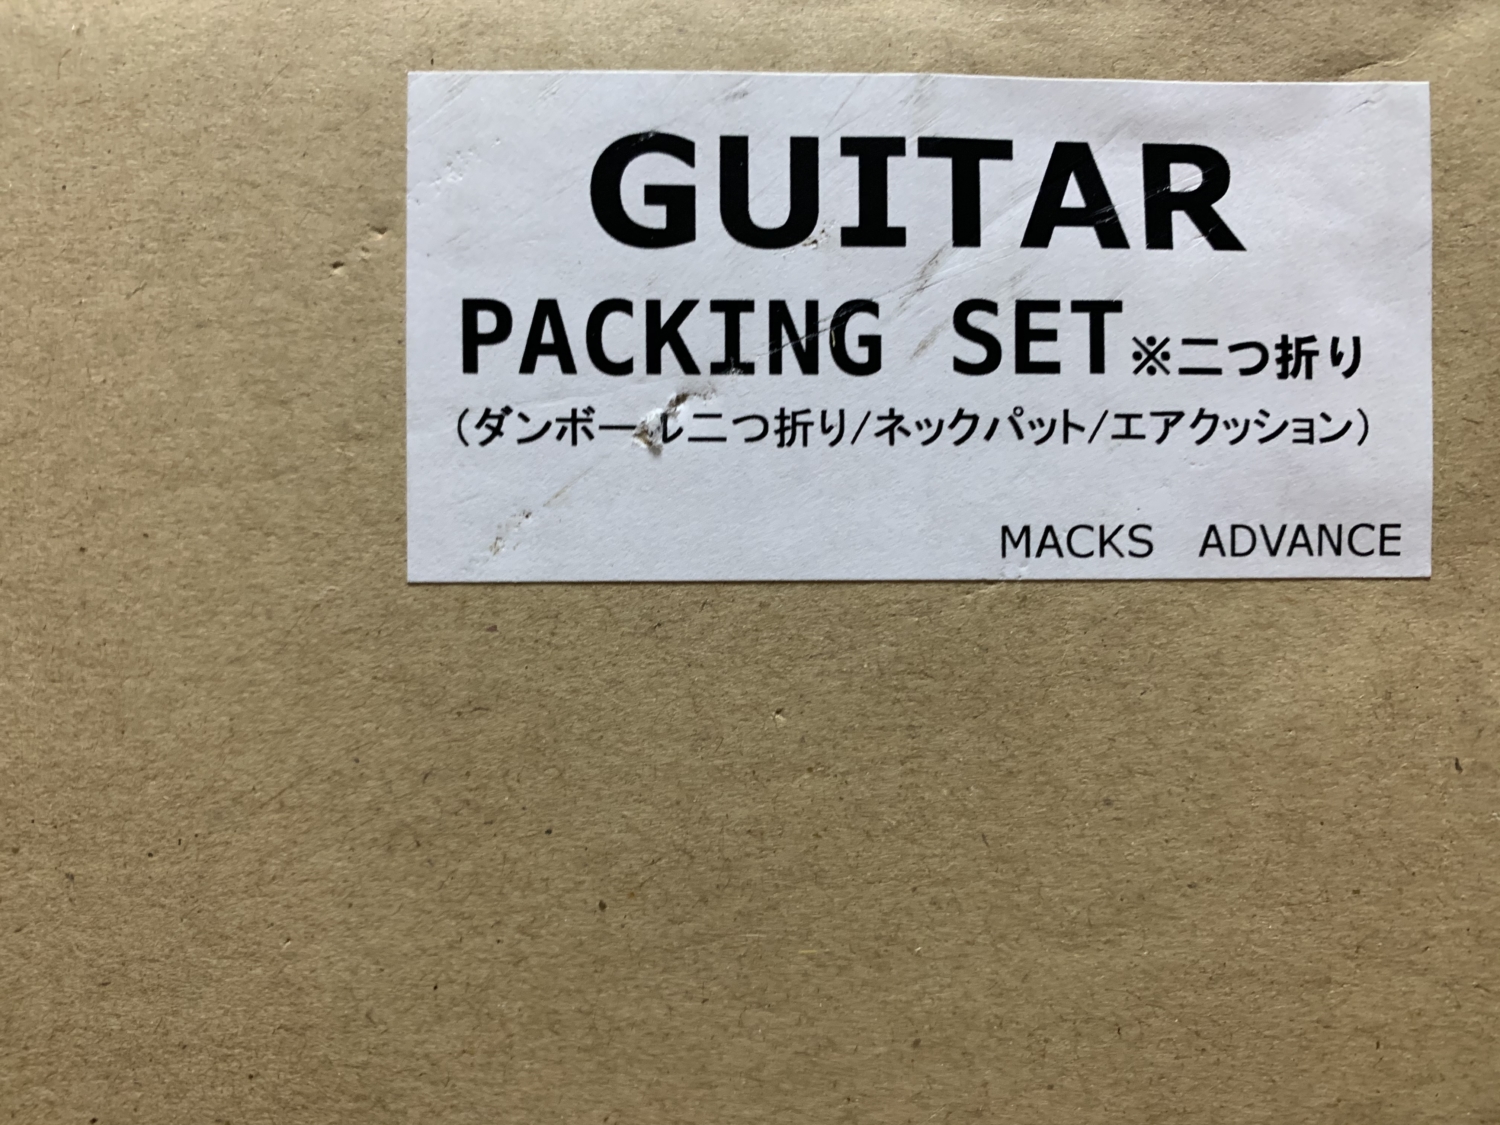 Amazonで購入したギター梱包用のダンボール